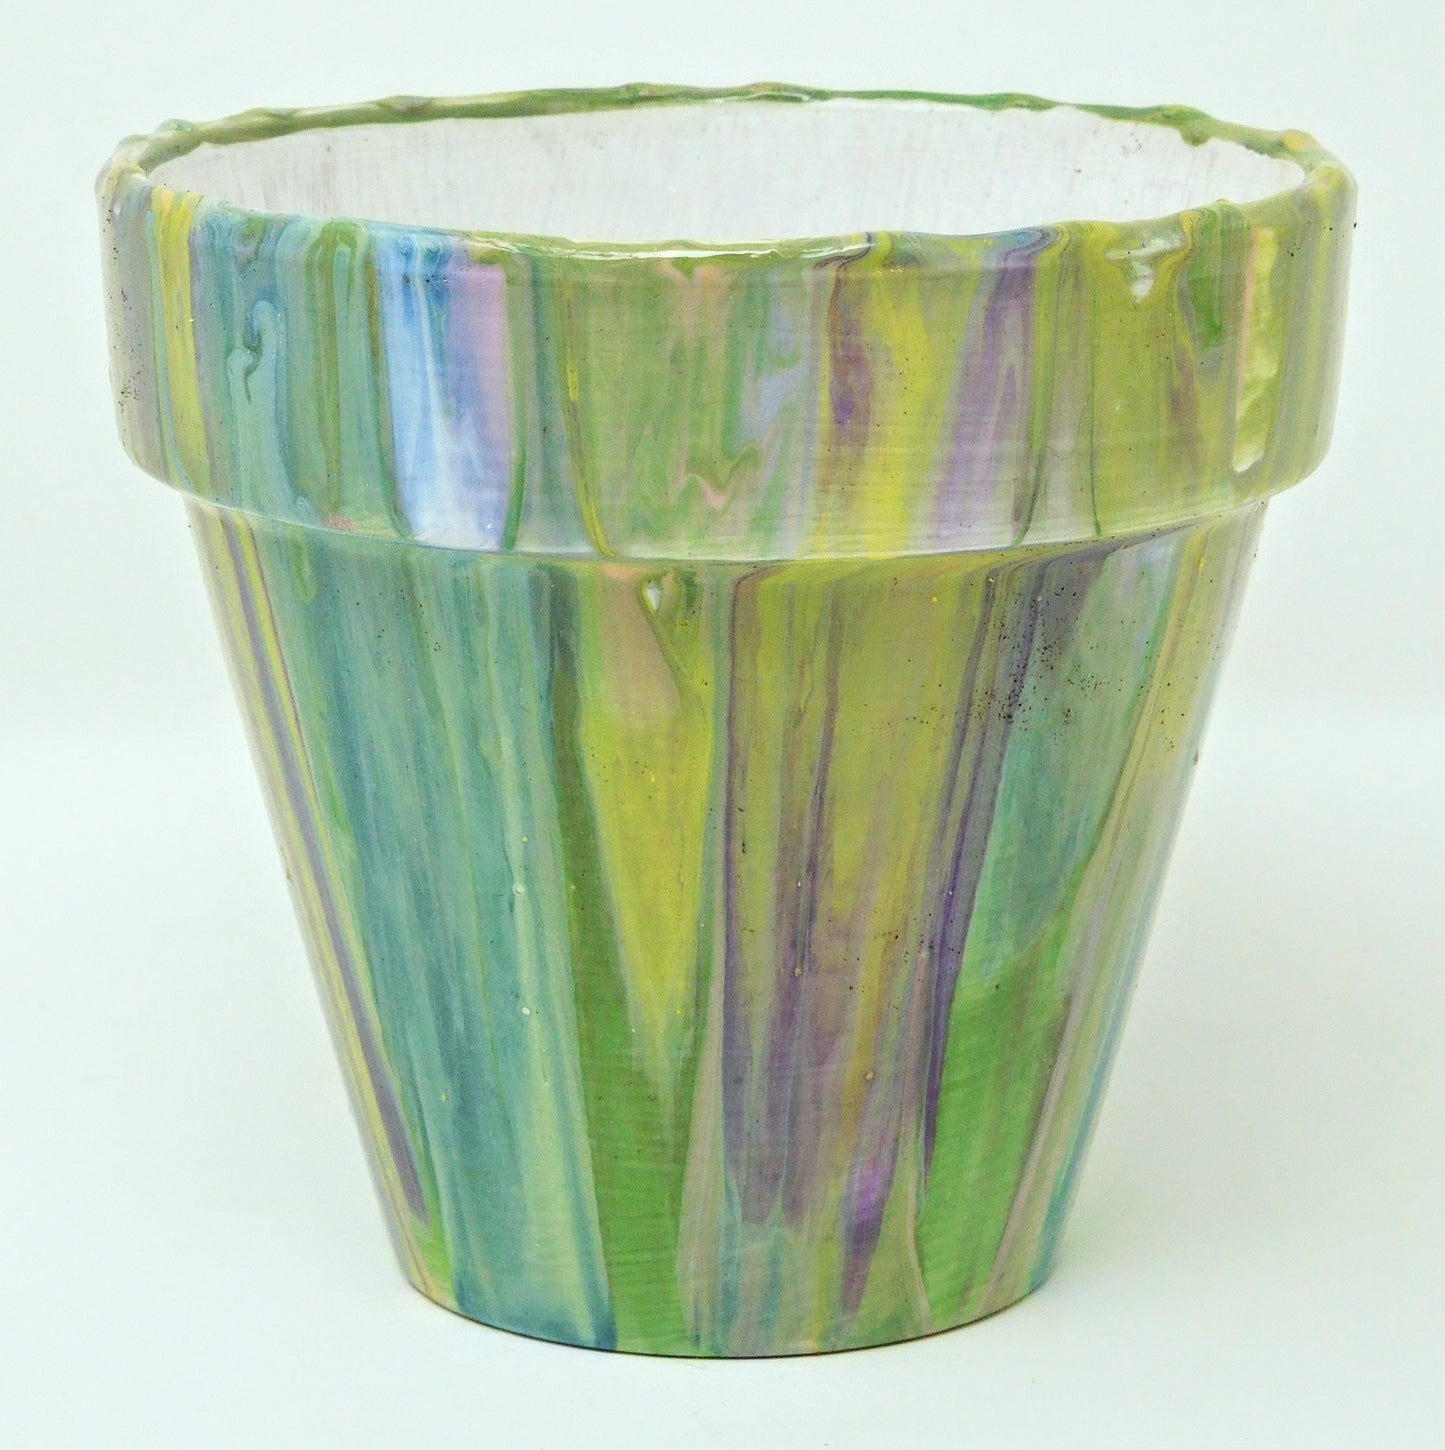 Acrylic pour terracotta pots